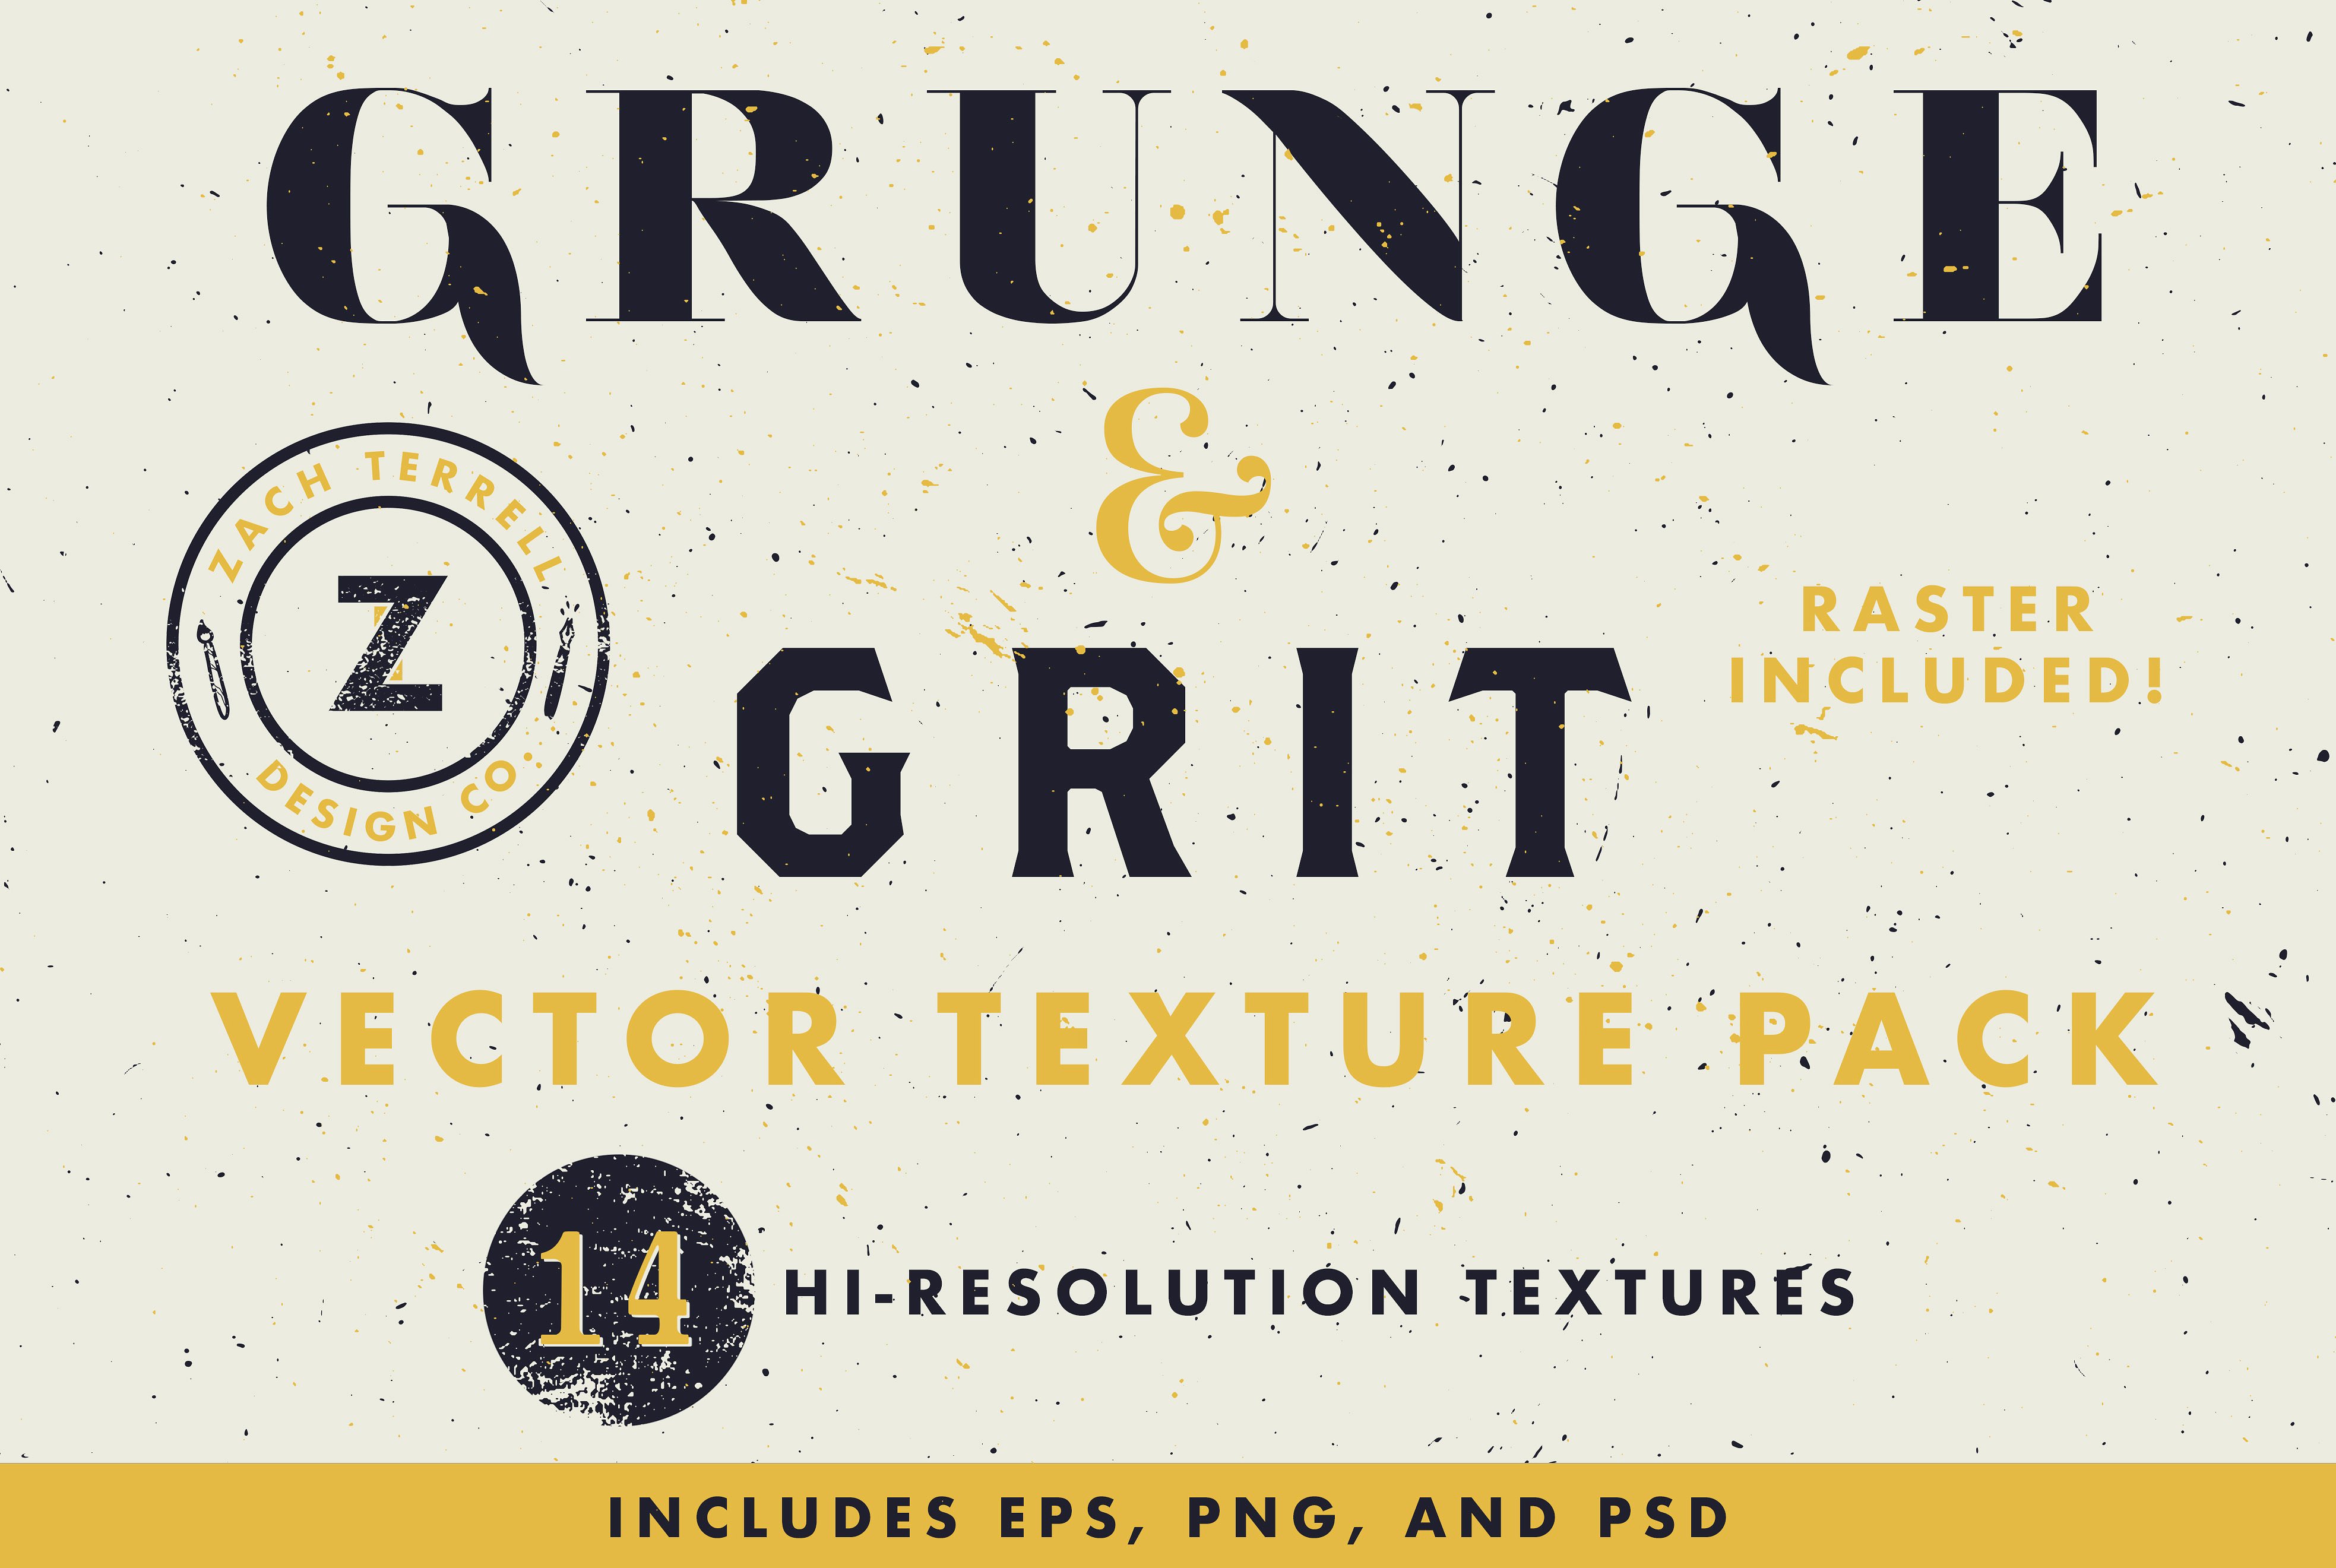 粗糙颗粒砂砾纹理背景图片素材 Grit Textures插图